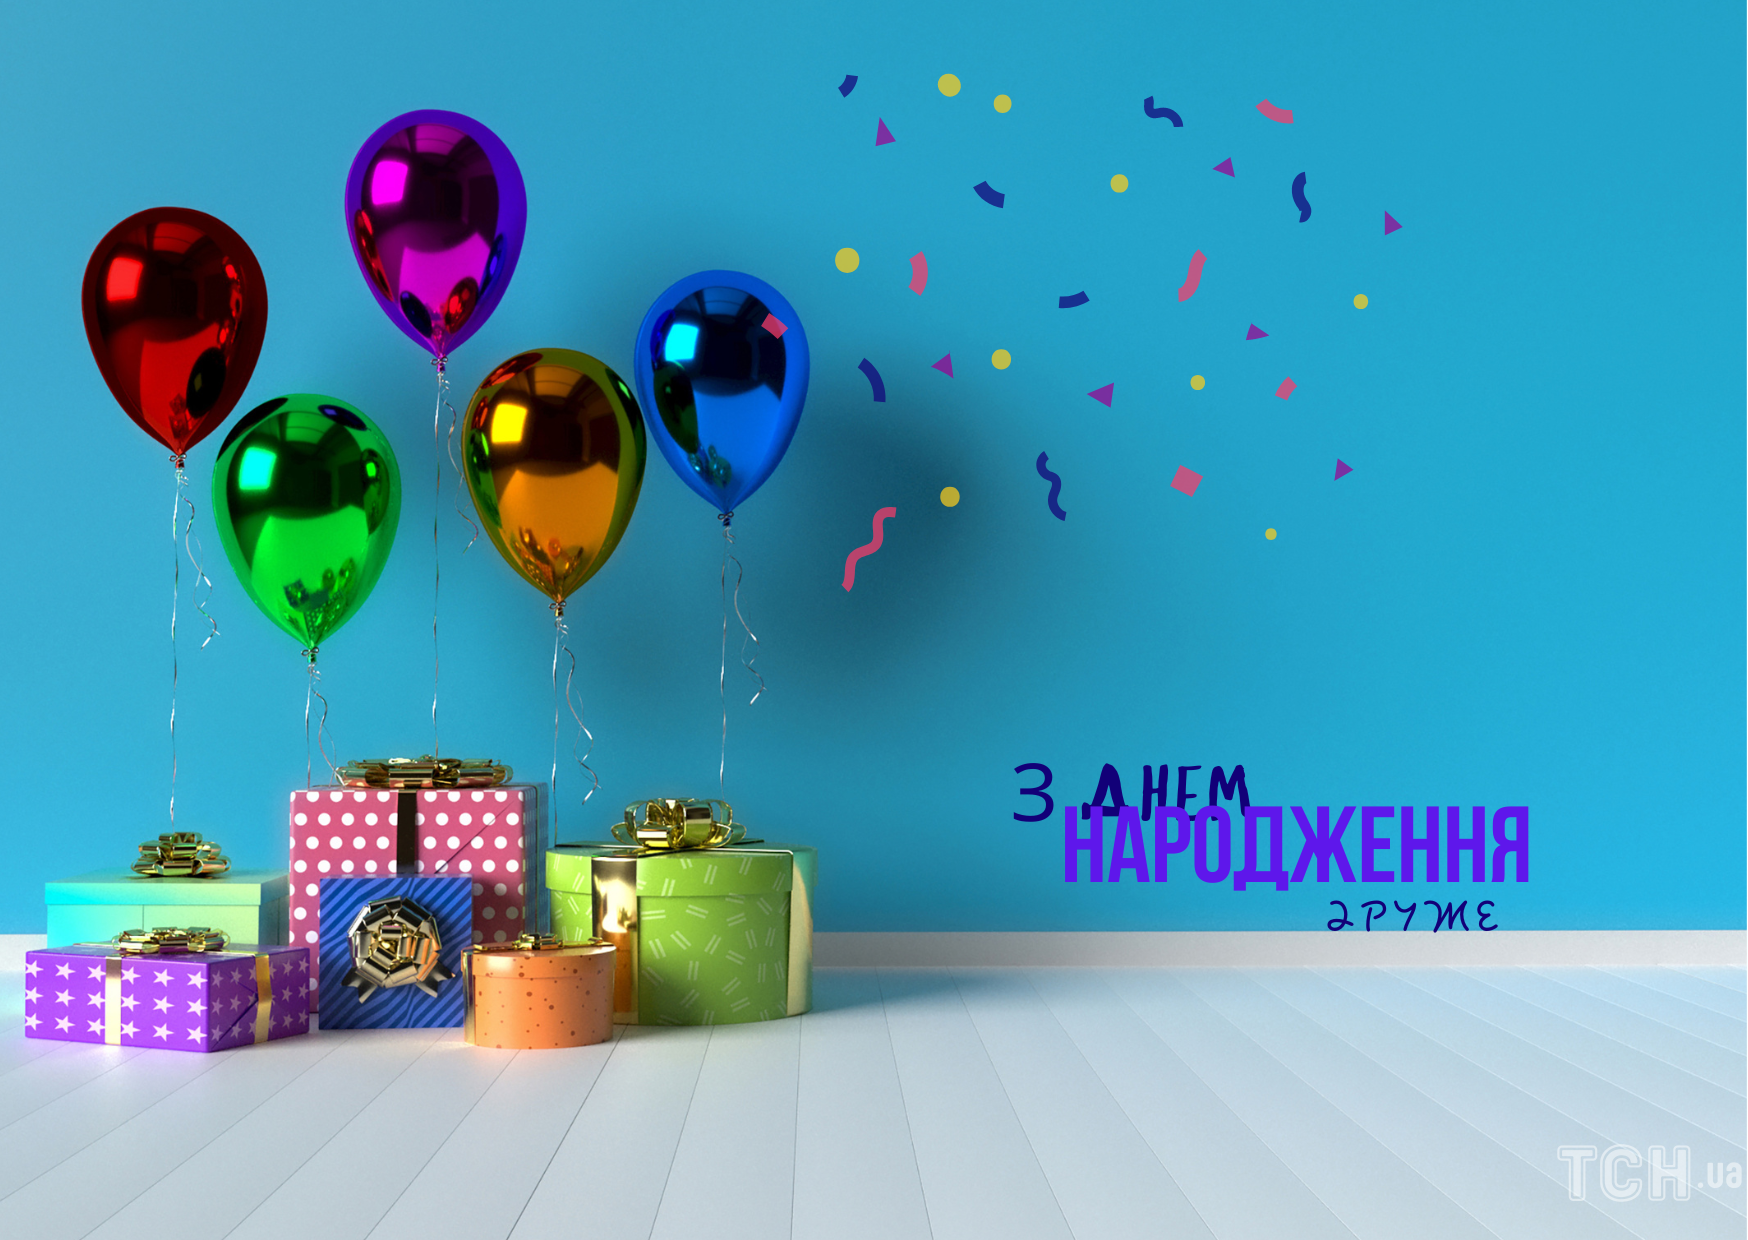 Матерное поздравление женщине с Днем рождения на украинском языке